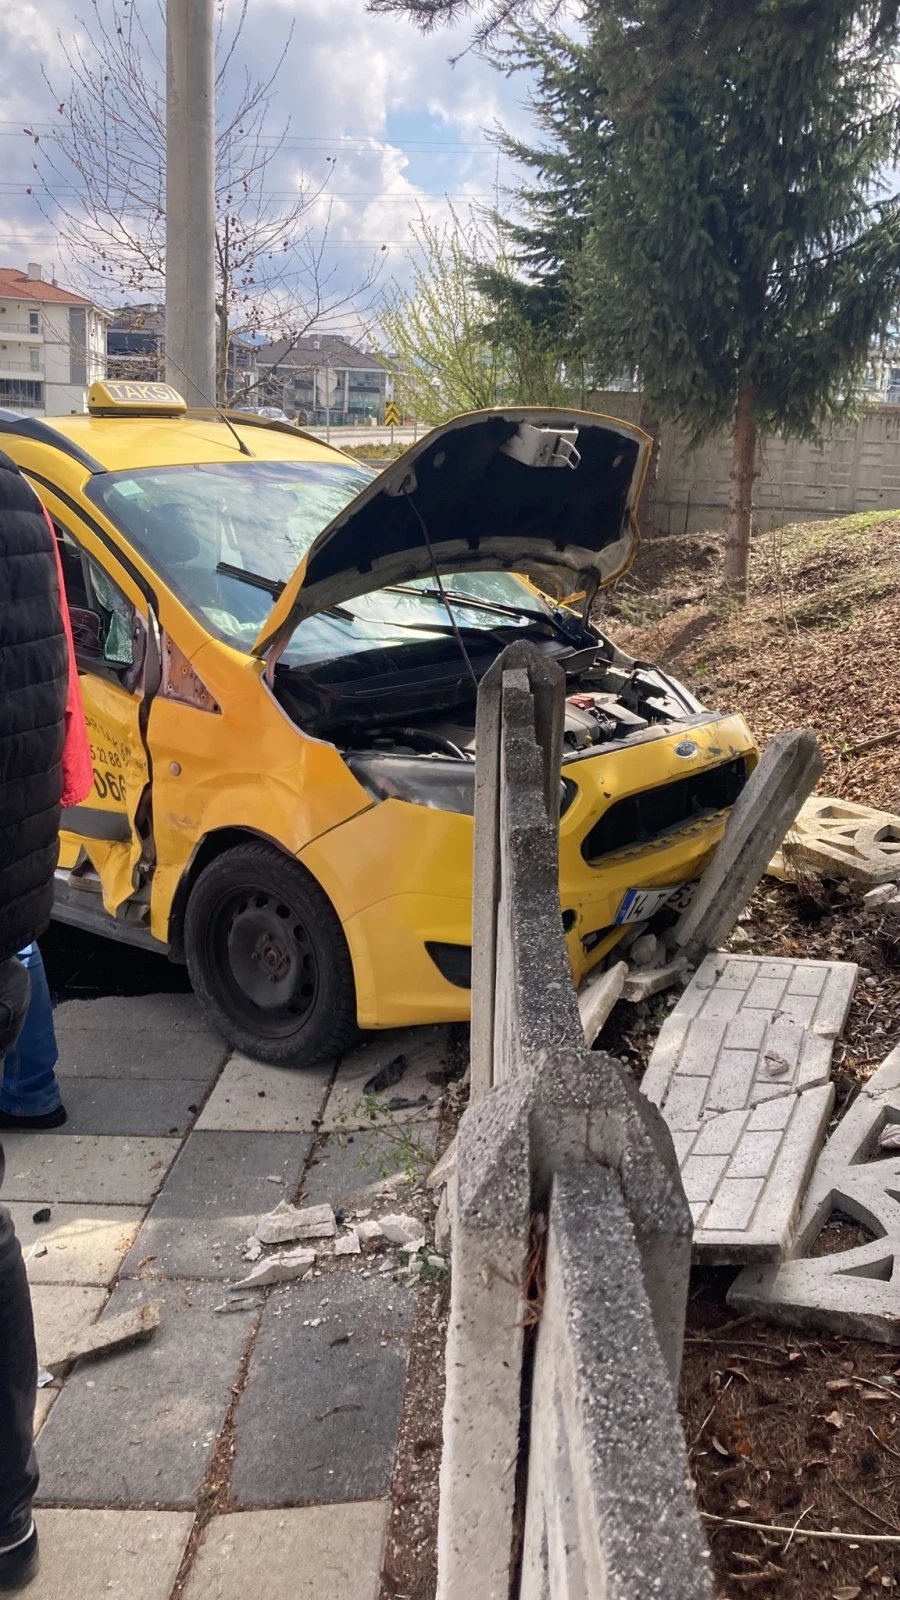  Ticari taksi ile otomobil çarpıştı: 1 yaralı   